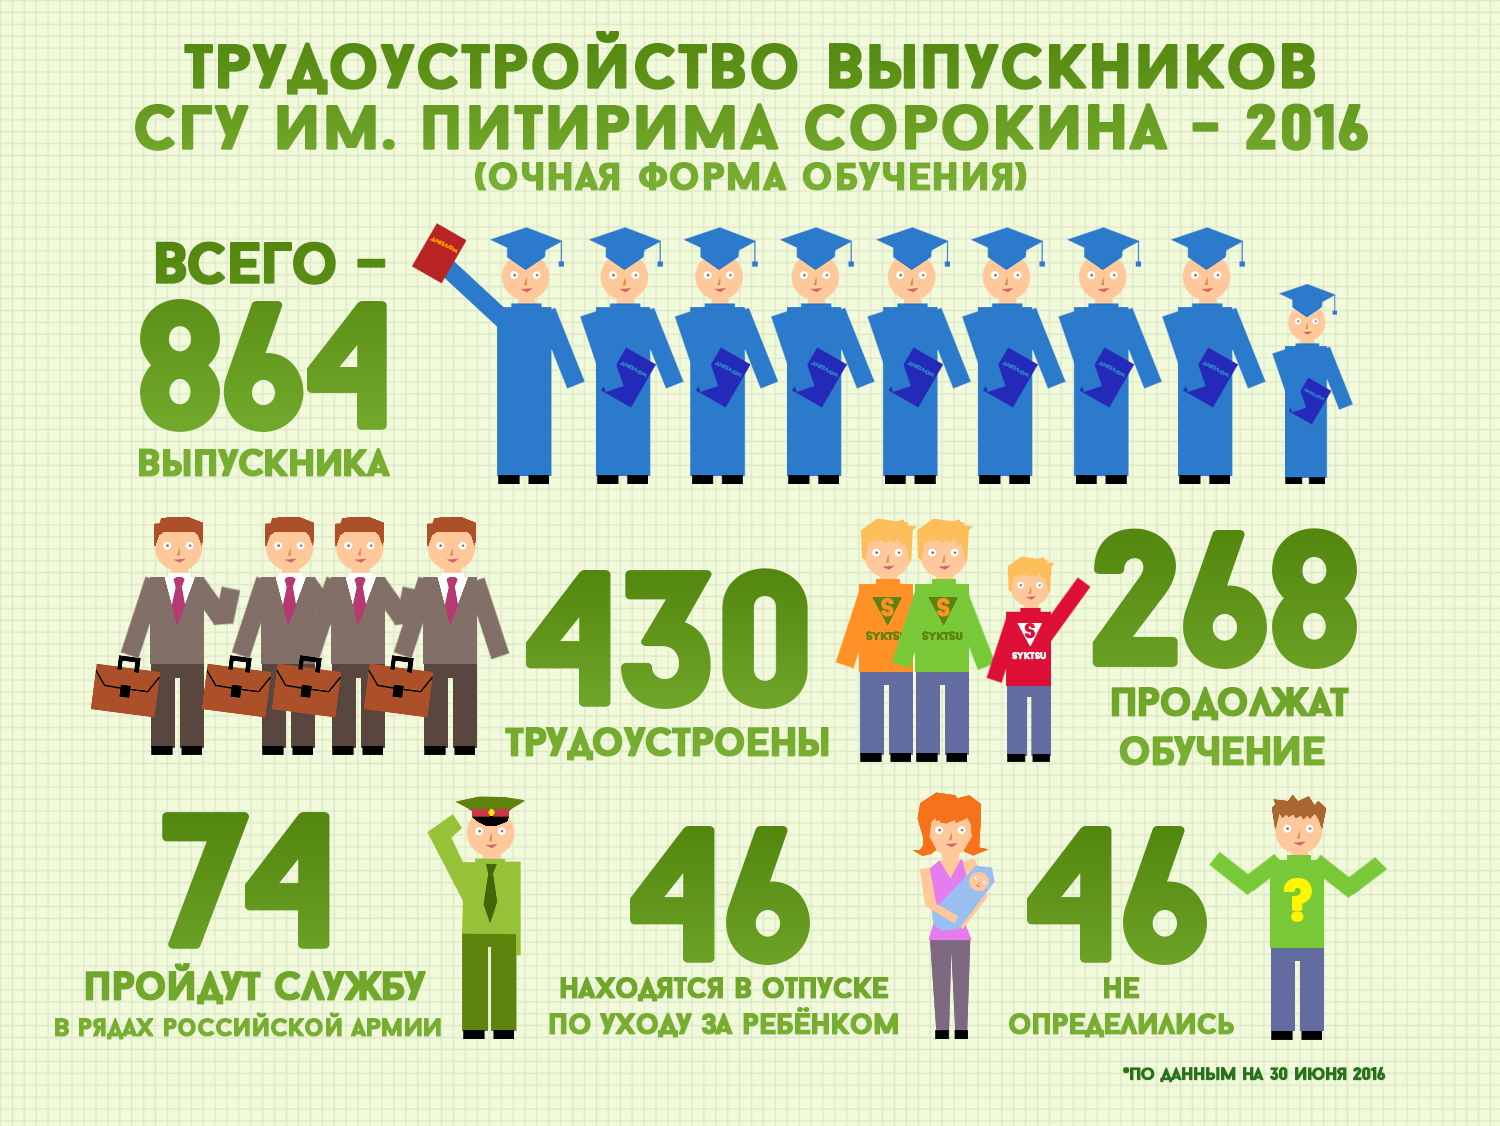 СГУ в первой десятке вузов России по трудоустройству выпускников